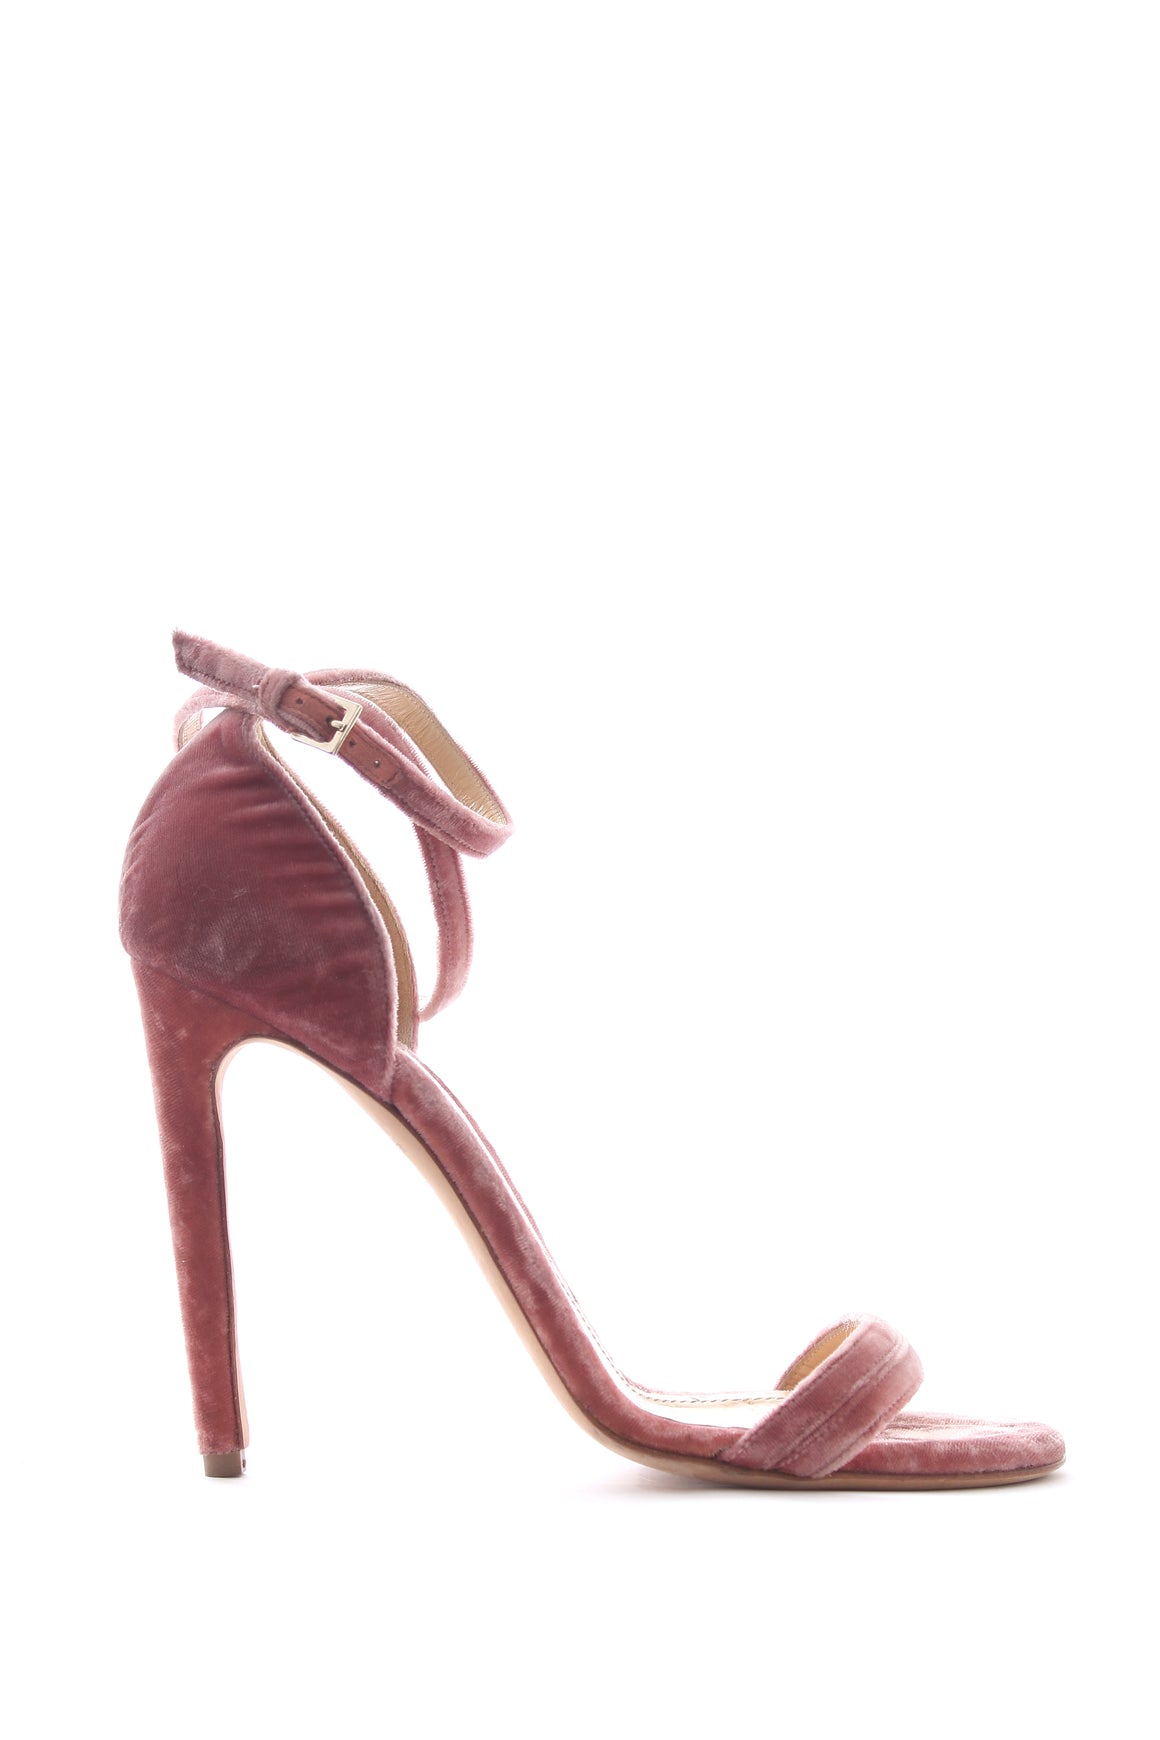 Chloe Gosselin Velvet Strap Sandals